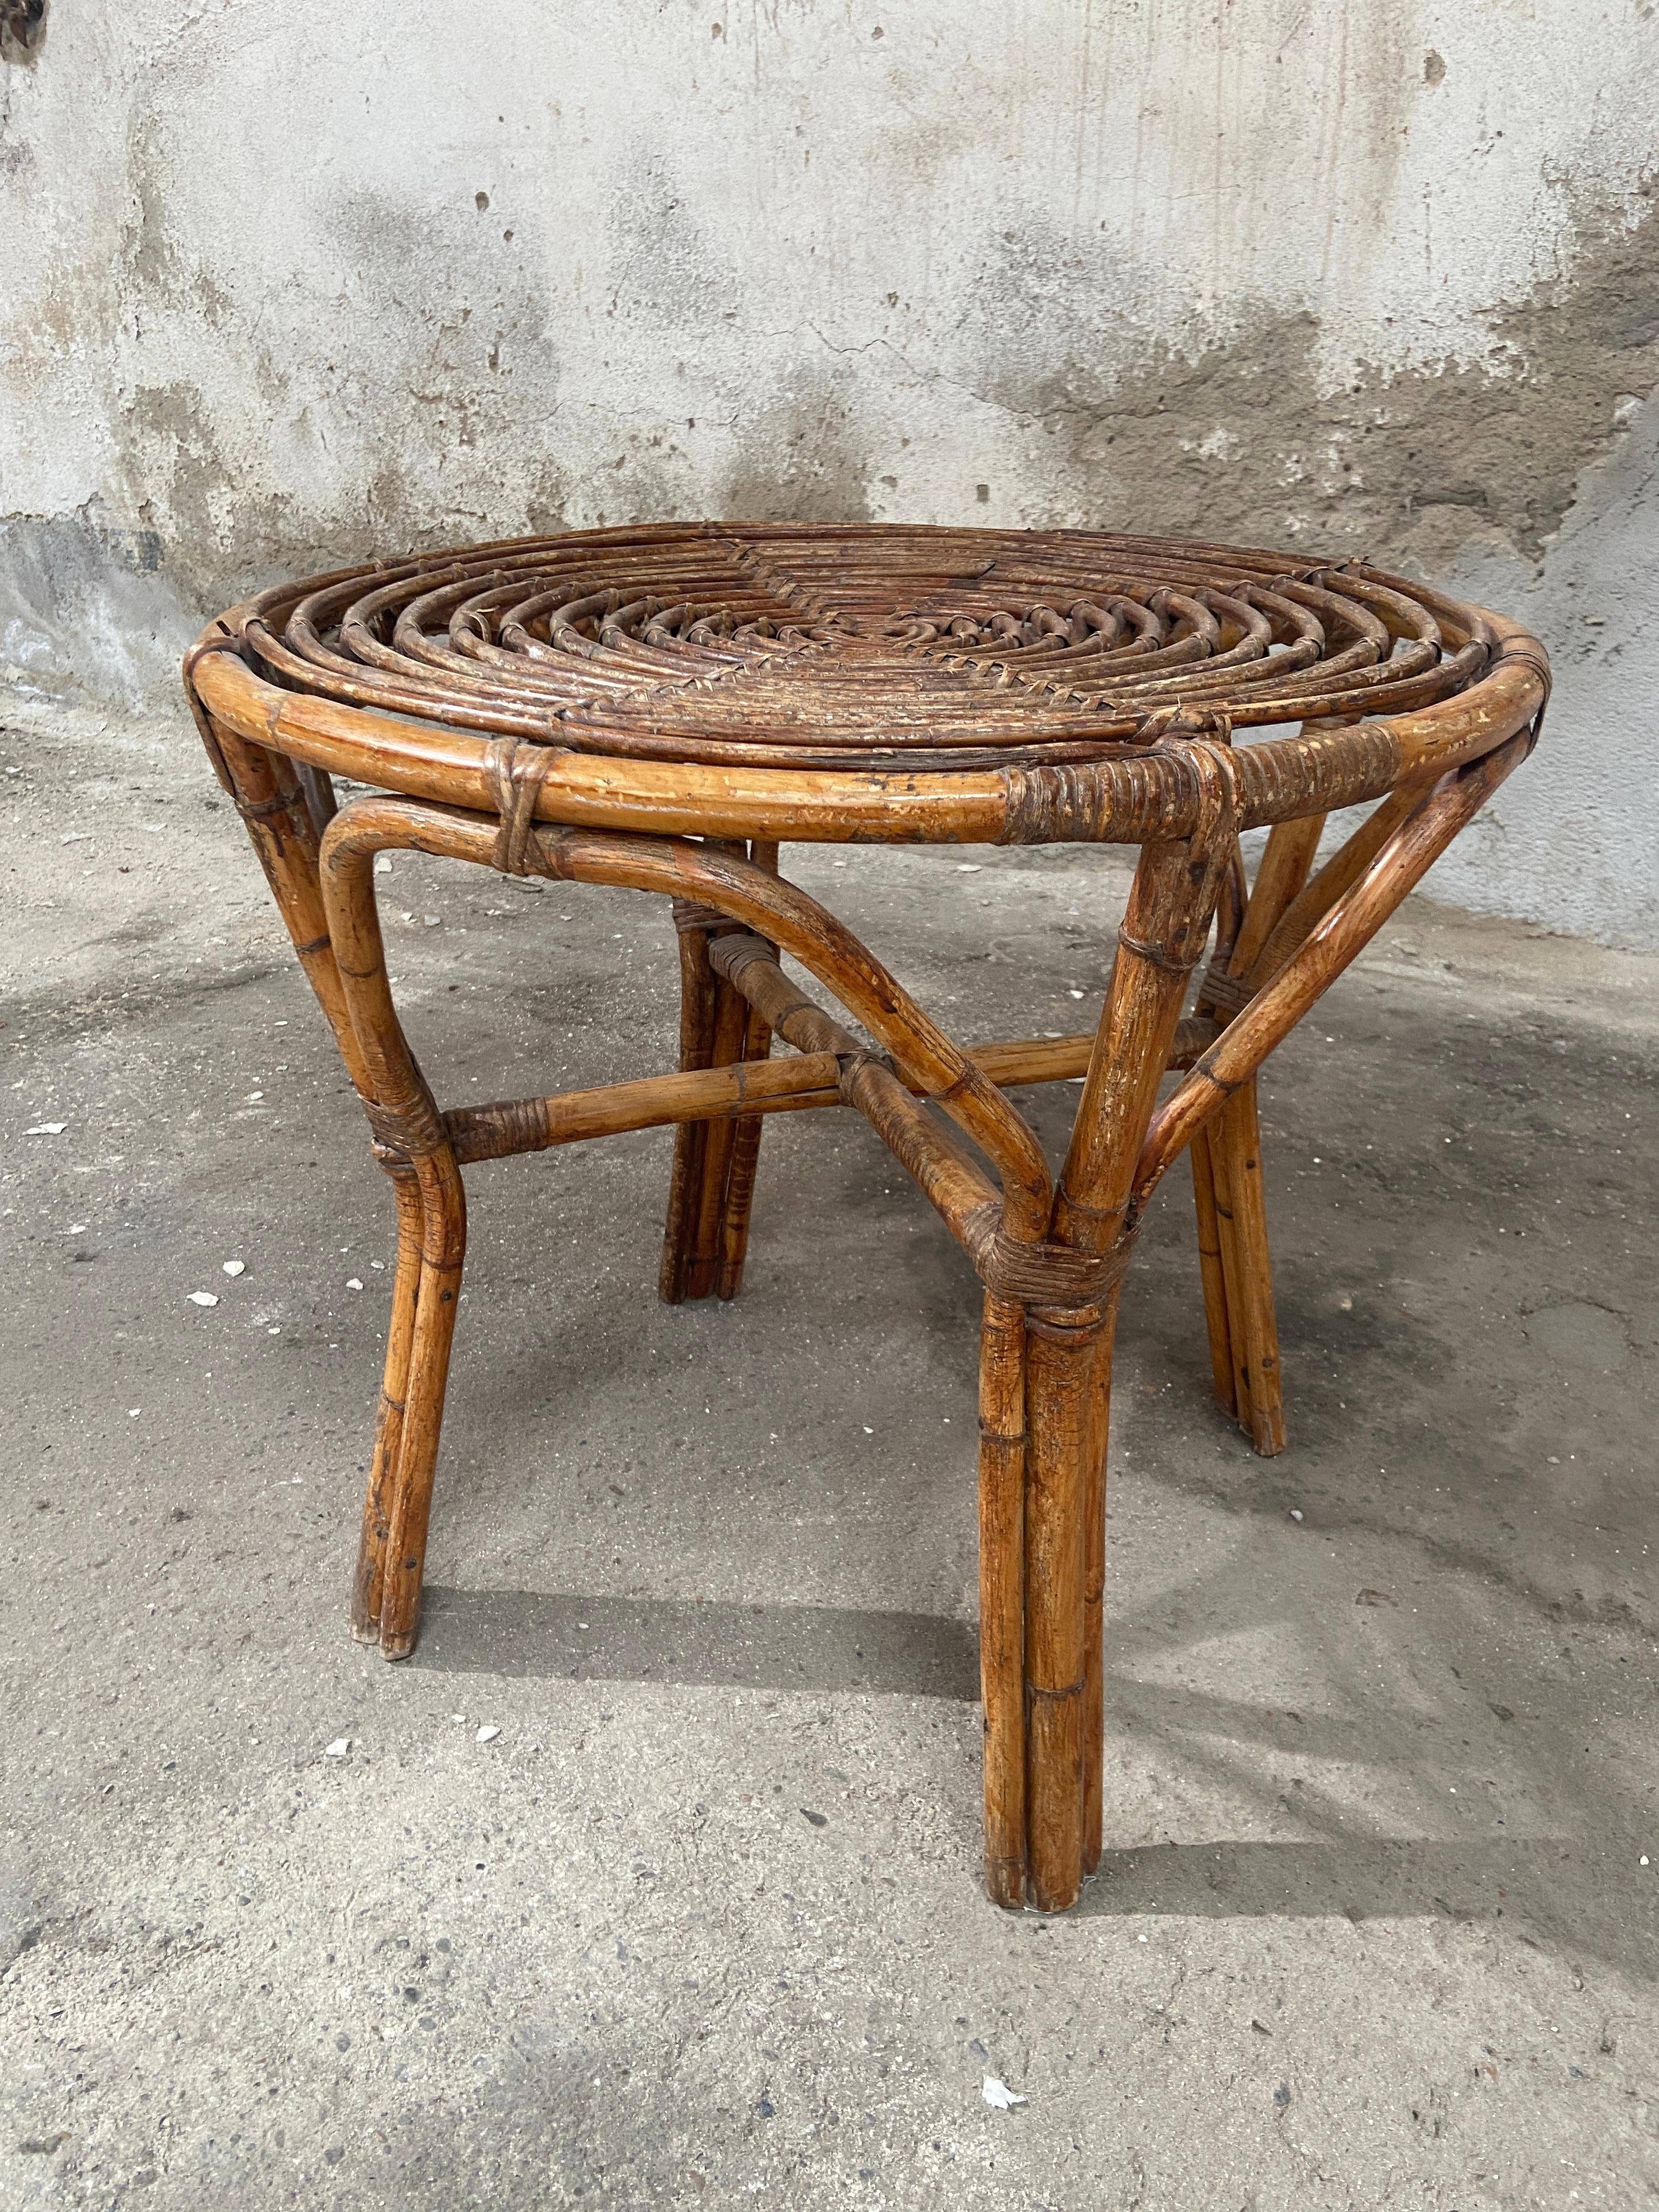 Canapé ou table d'appoint rond en bambou et rotin de style italien moderne du milieu du siècle.
La superbe patine de cette table est due à l'âge et à l'usage